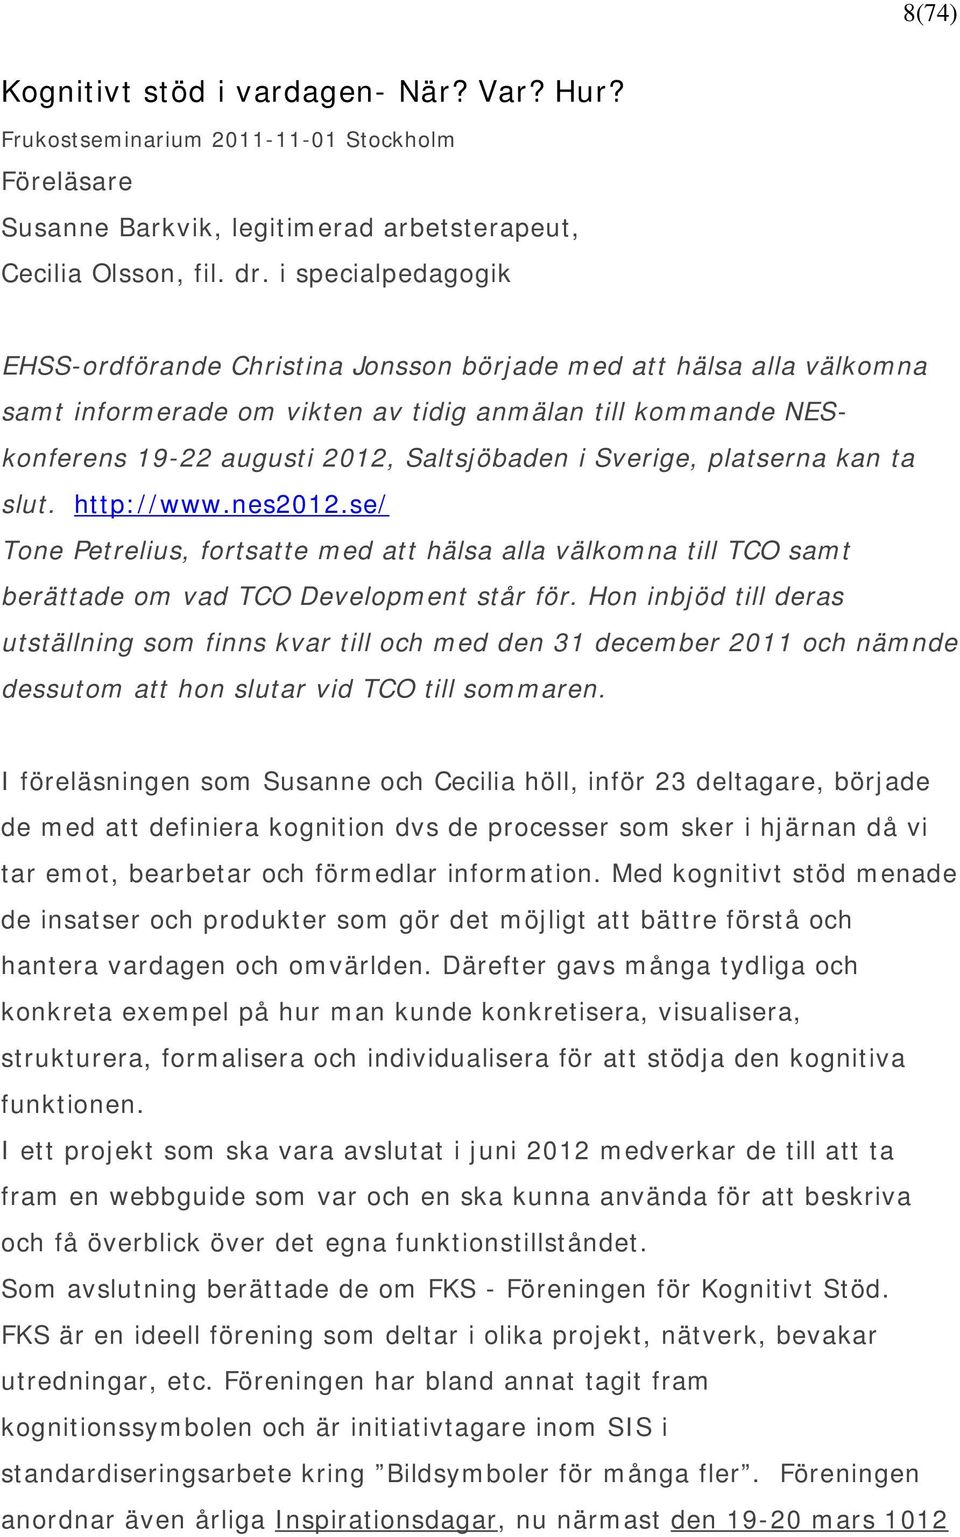 Sverige, platserna kan ta slut. http://www.nes2012.se/ Tone Petrelius, fortsatte med att hälsa alla välkomna till TCO samt berättade om vad TCO Development står för.